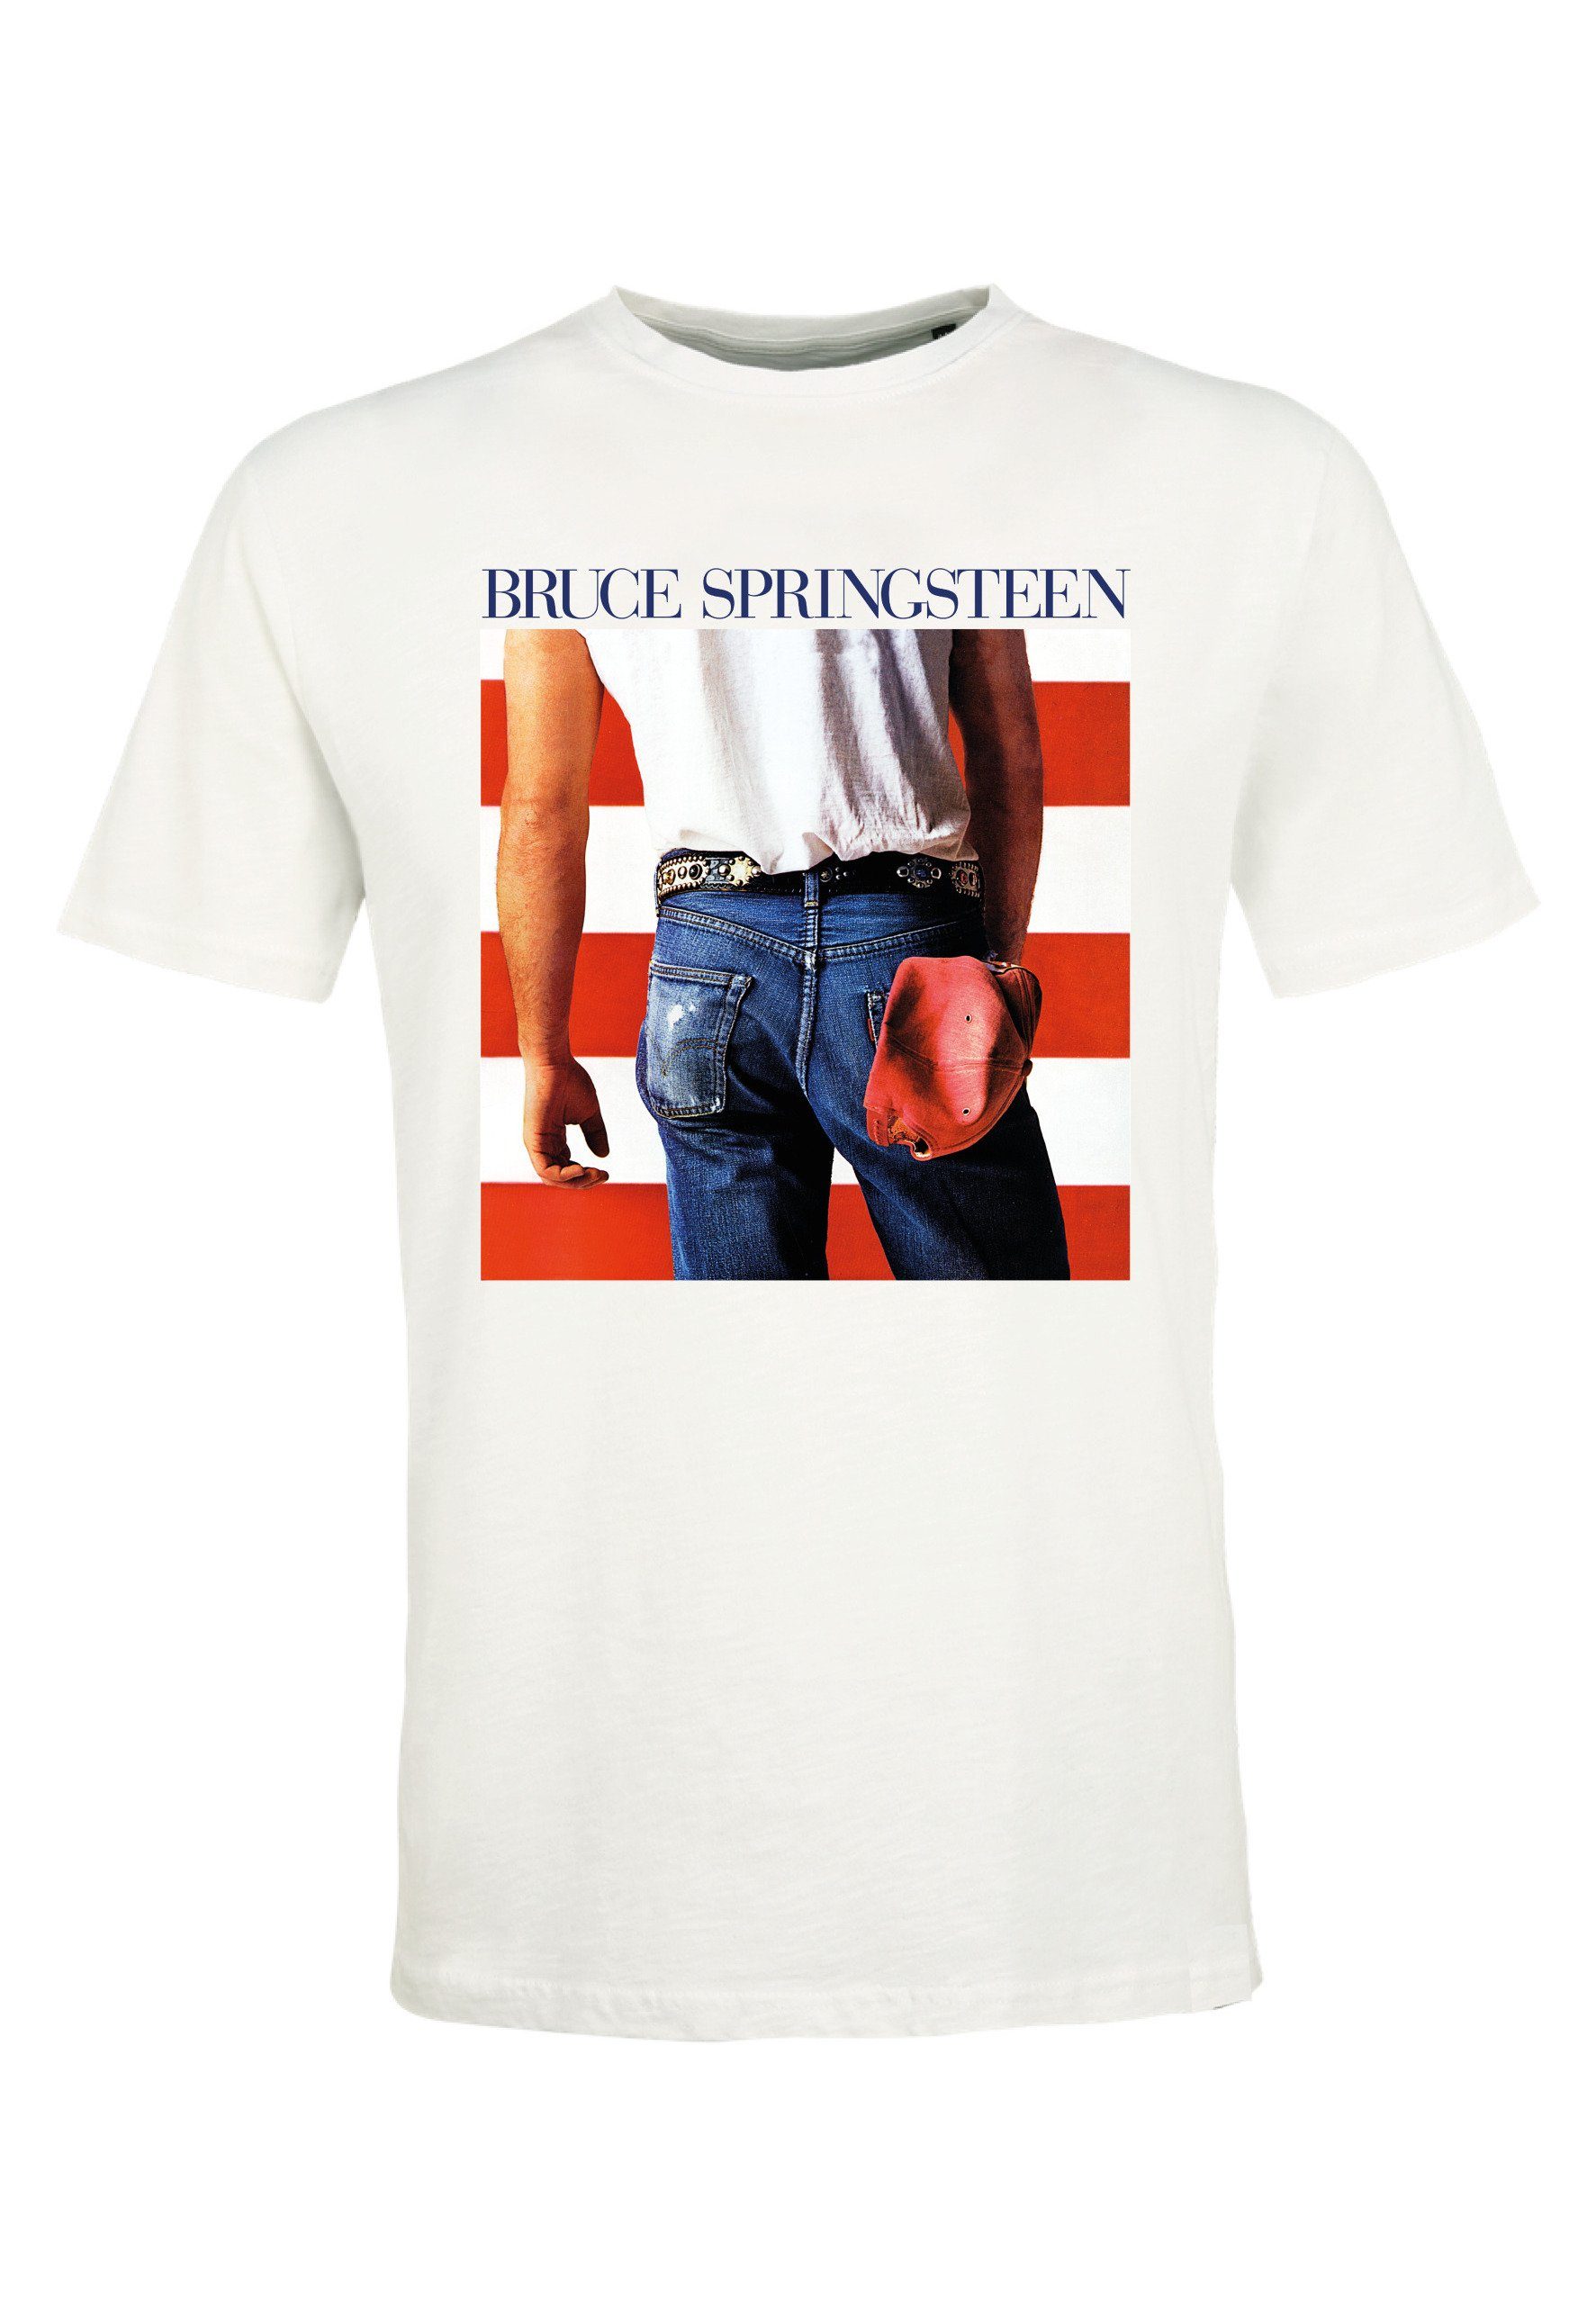 Bio-Baumwolle Springsteen Pixel Recovered Bruce Relaxed GOTS zertifizierte T-Shirt